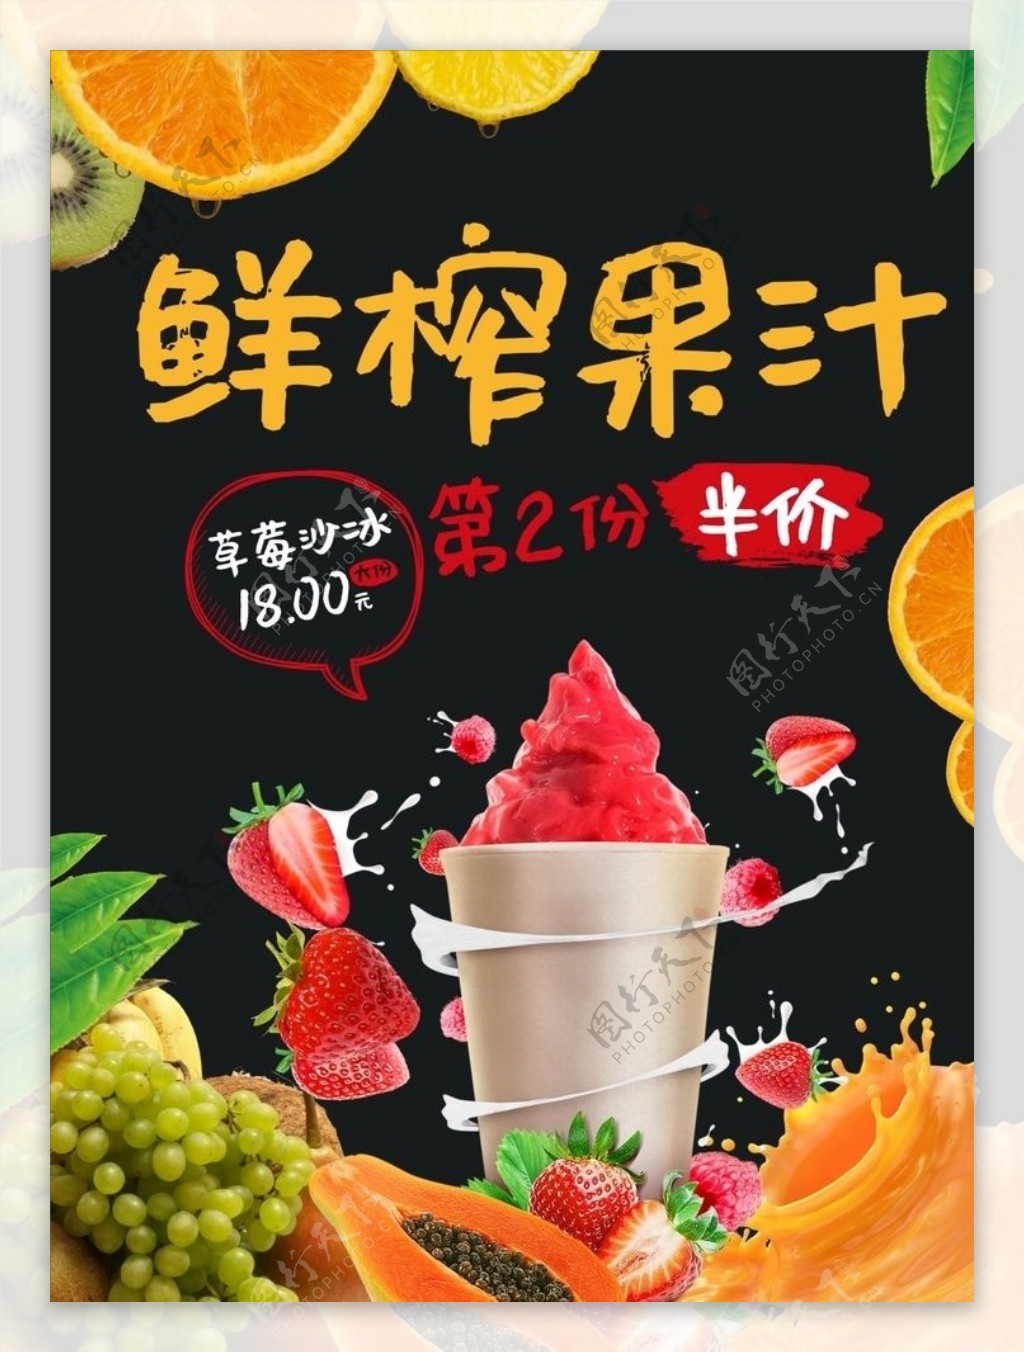 果汁海报